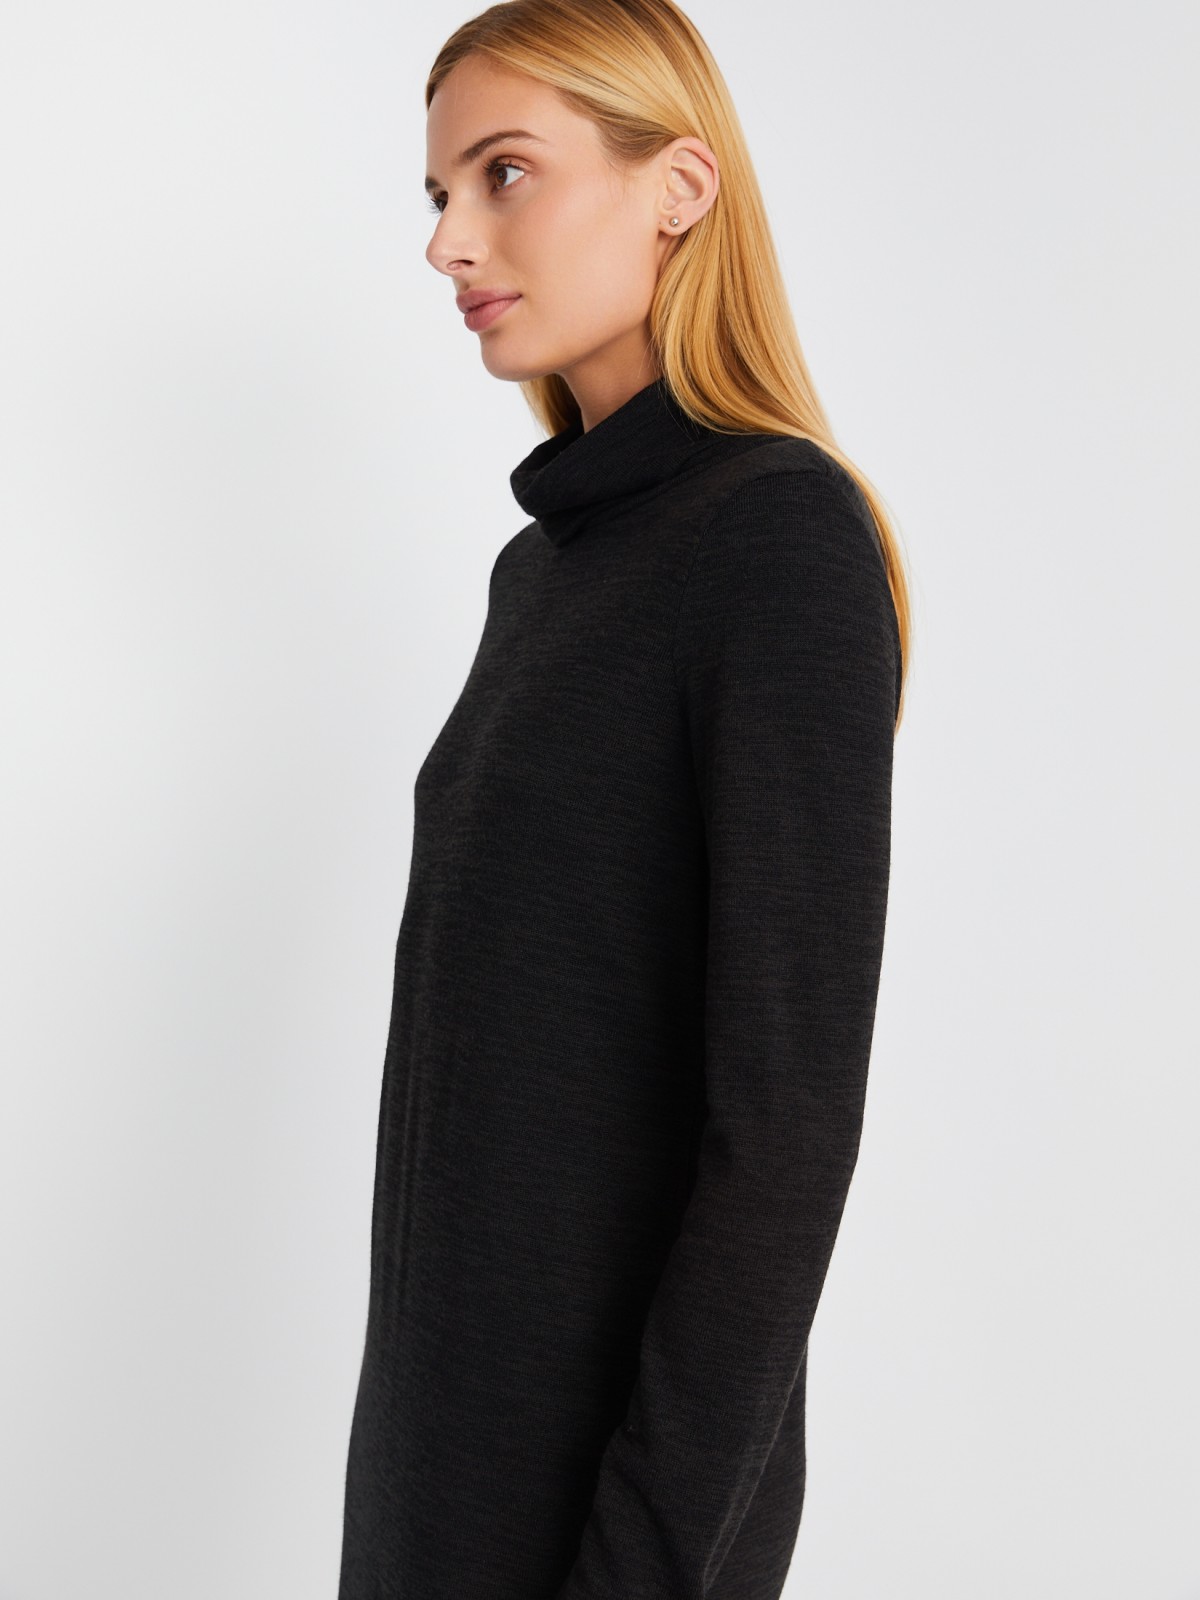 Трикотажное платье-свитер длины миди с высоким горлом zolla 02334819F062, цвет темно-серый, размер XS - фото 3